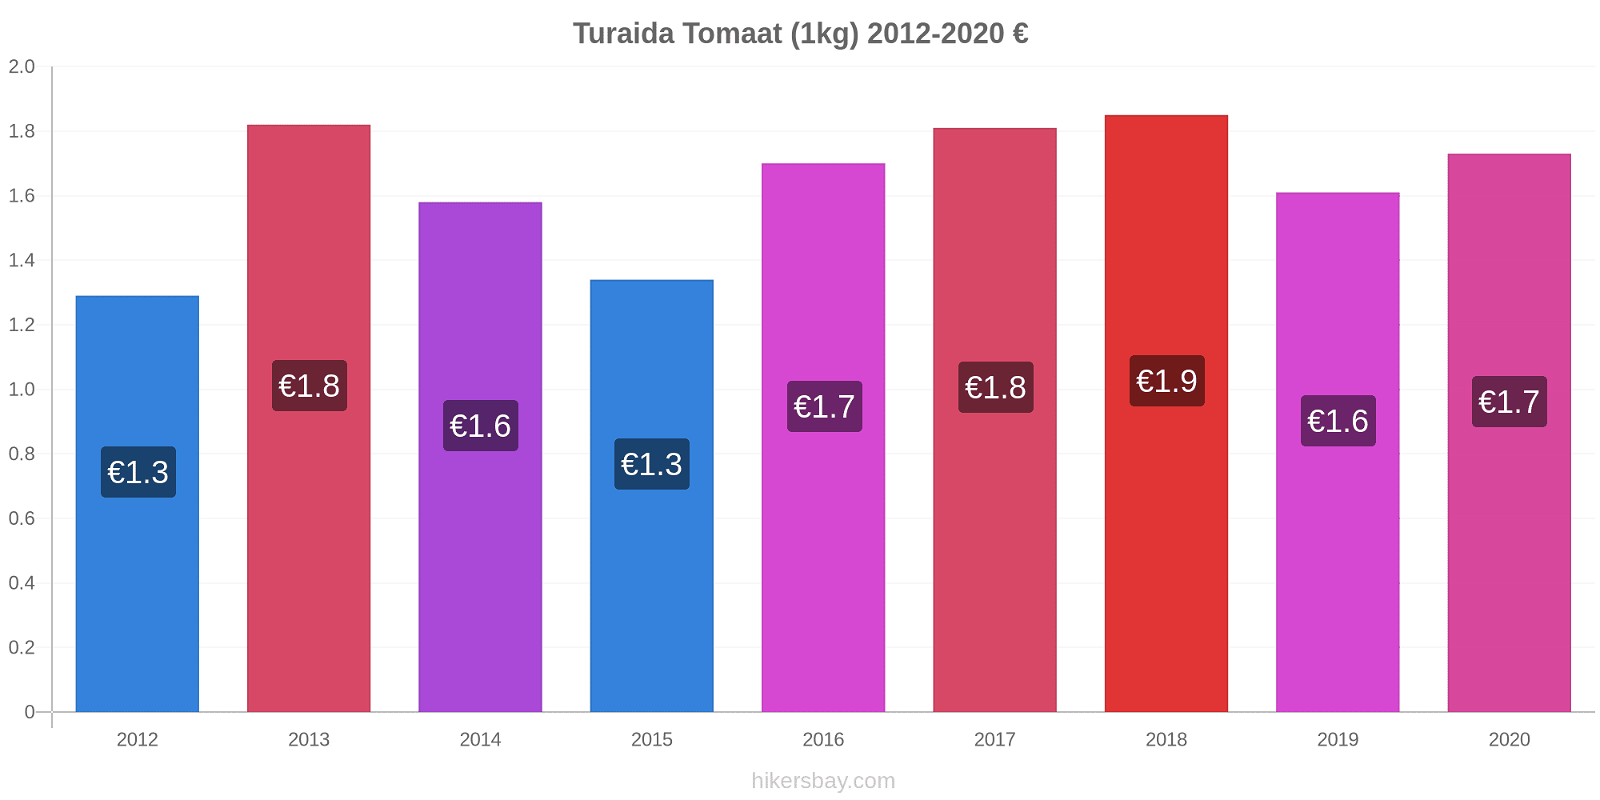 Turaida prijswijzigingen Tomaat (1kg) hikersbay.com